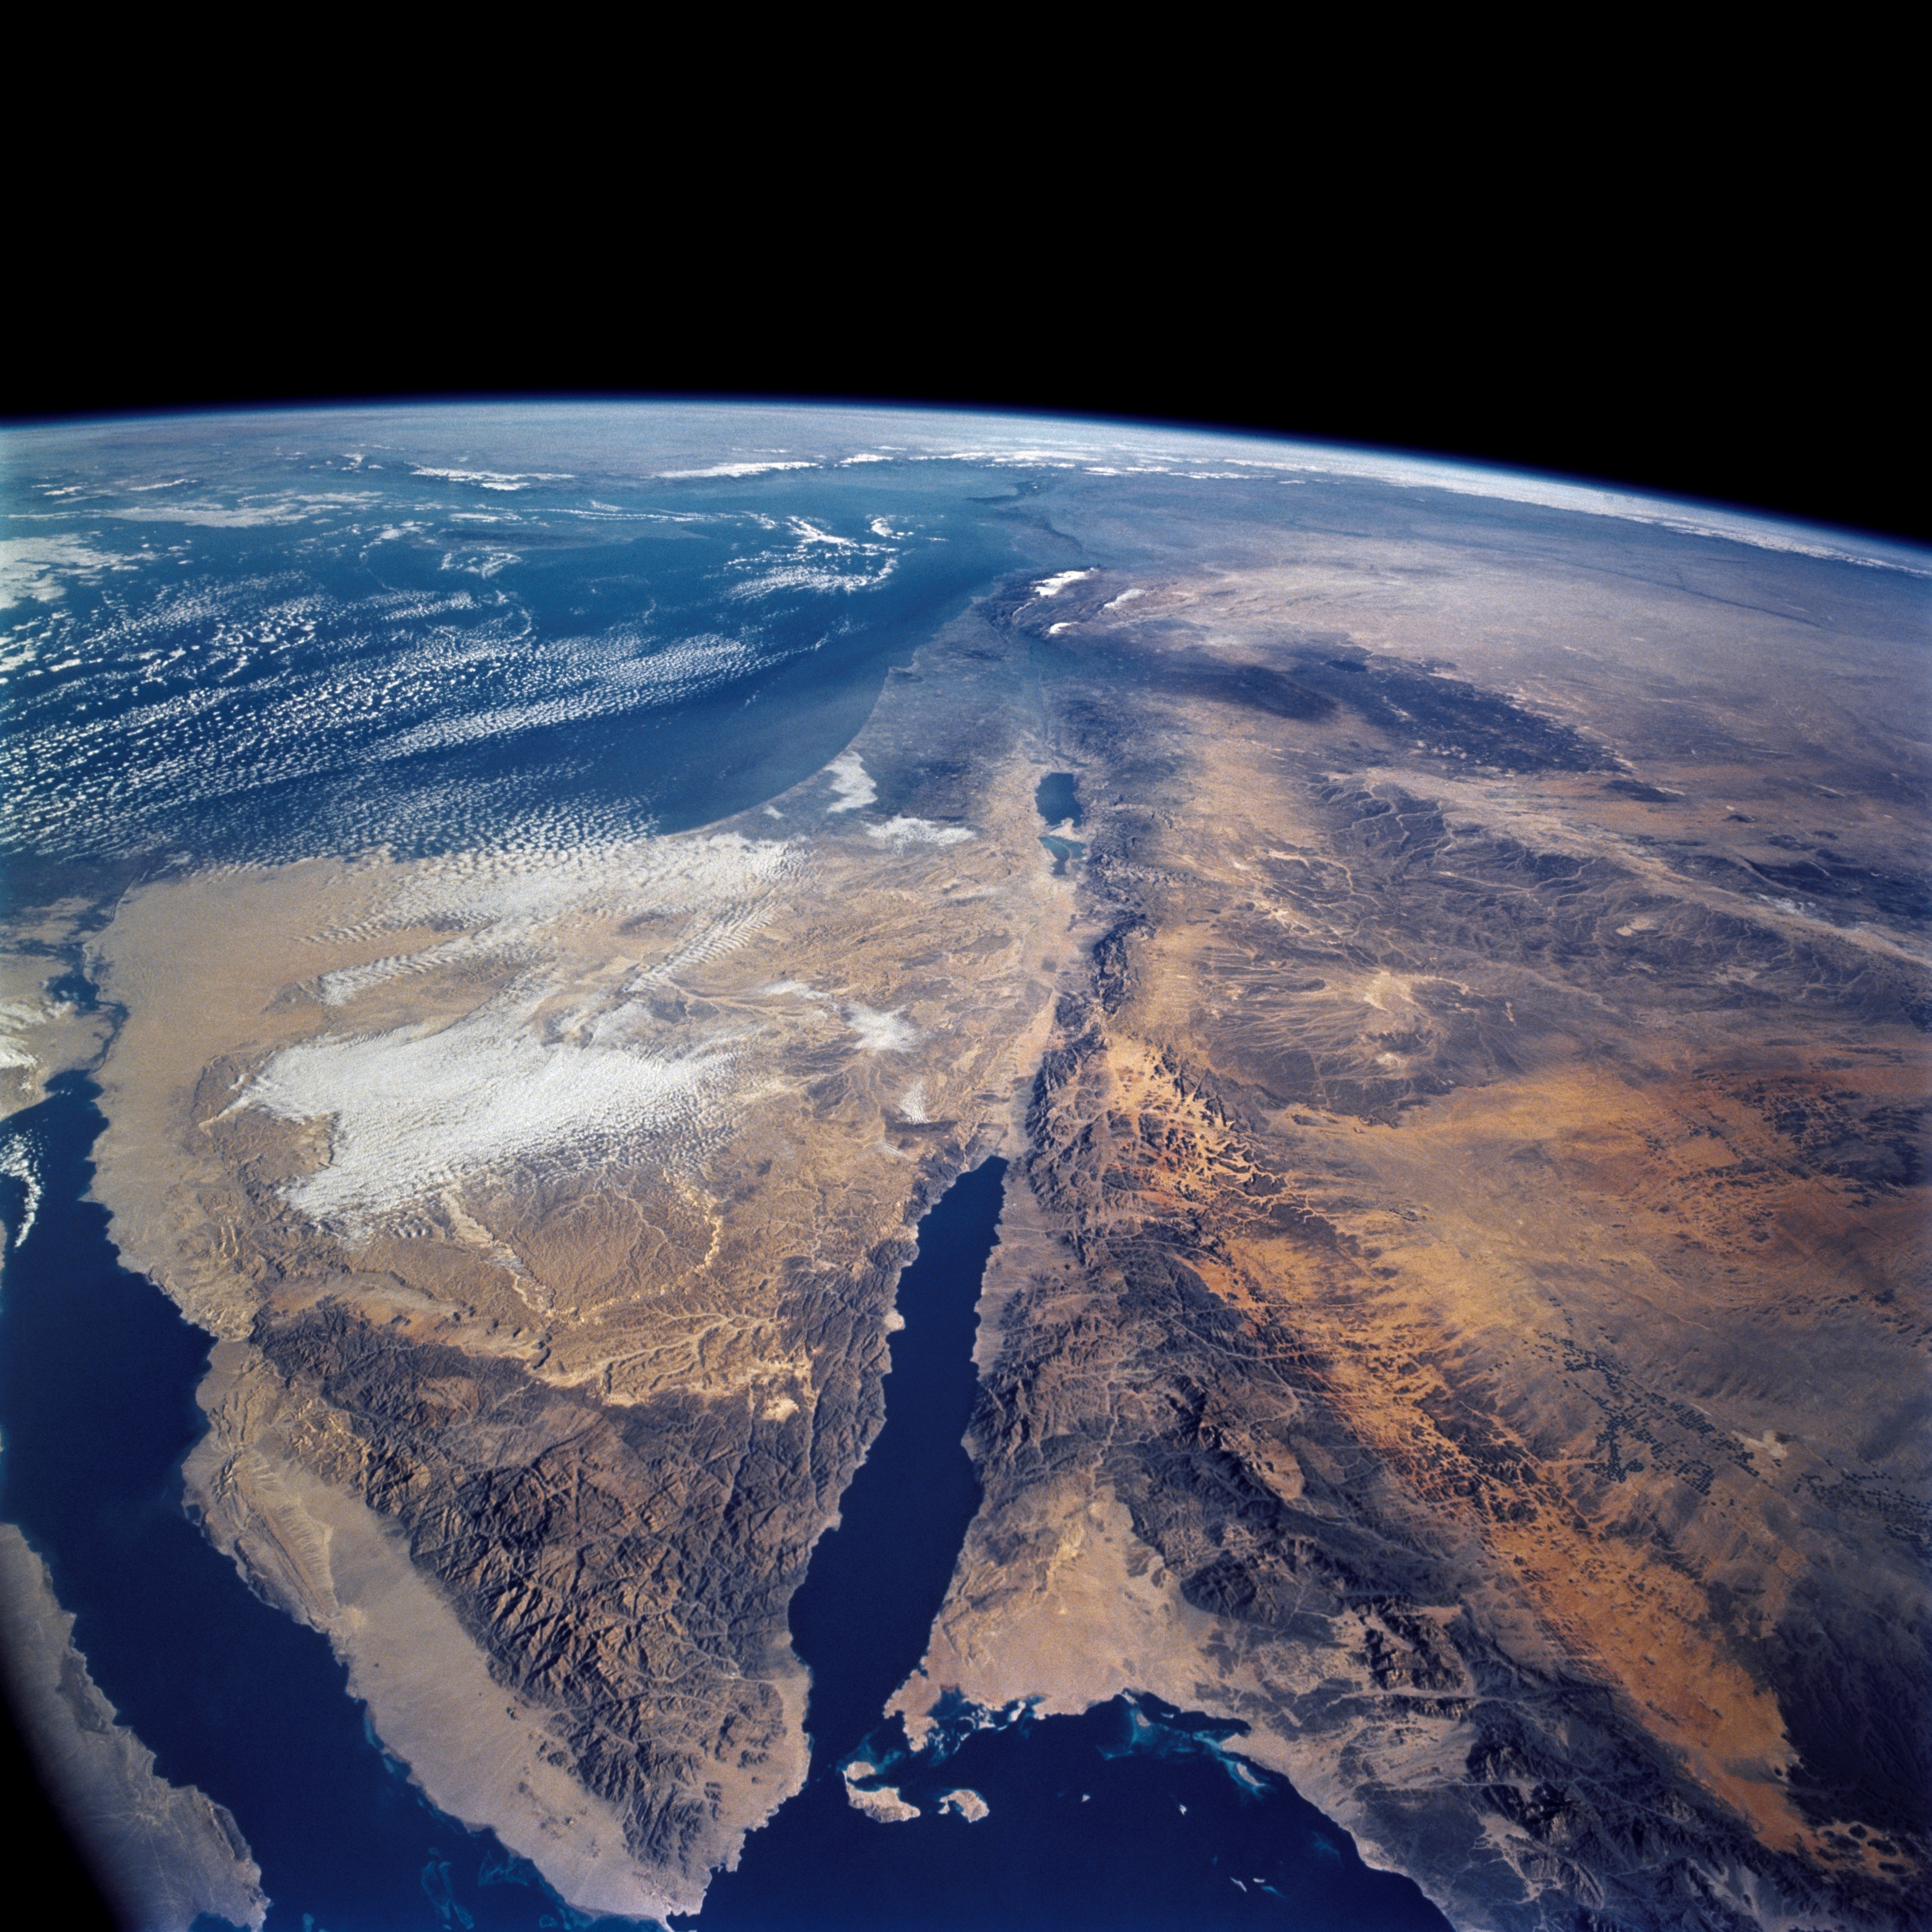 Снимки планеты земля. Аравийский полуостров Синай. Аравийский полуостров из космоса. Мертвое море Аравийский полуостров. Синайский полуостров с космоса.